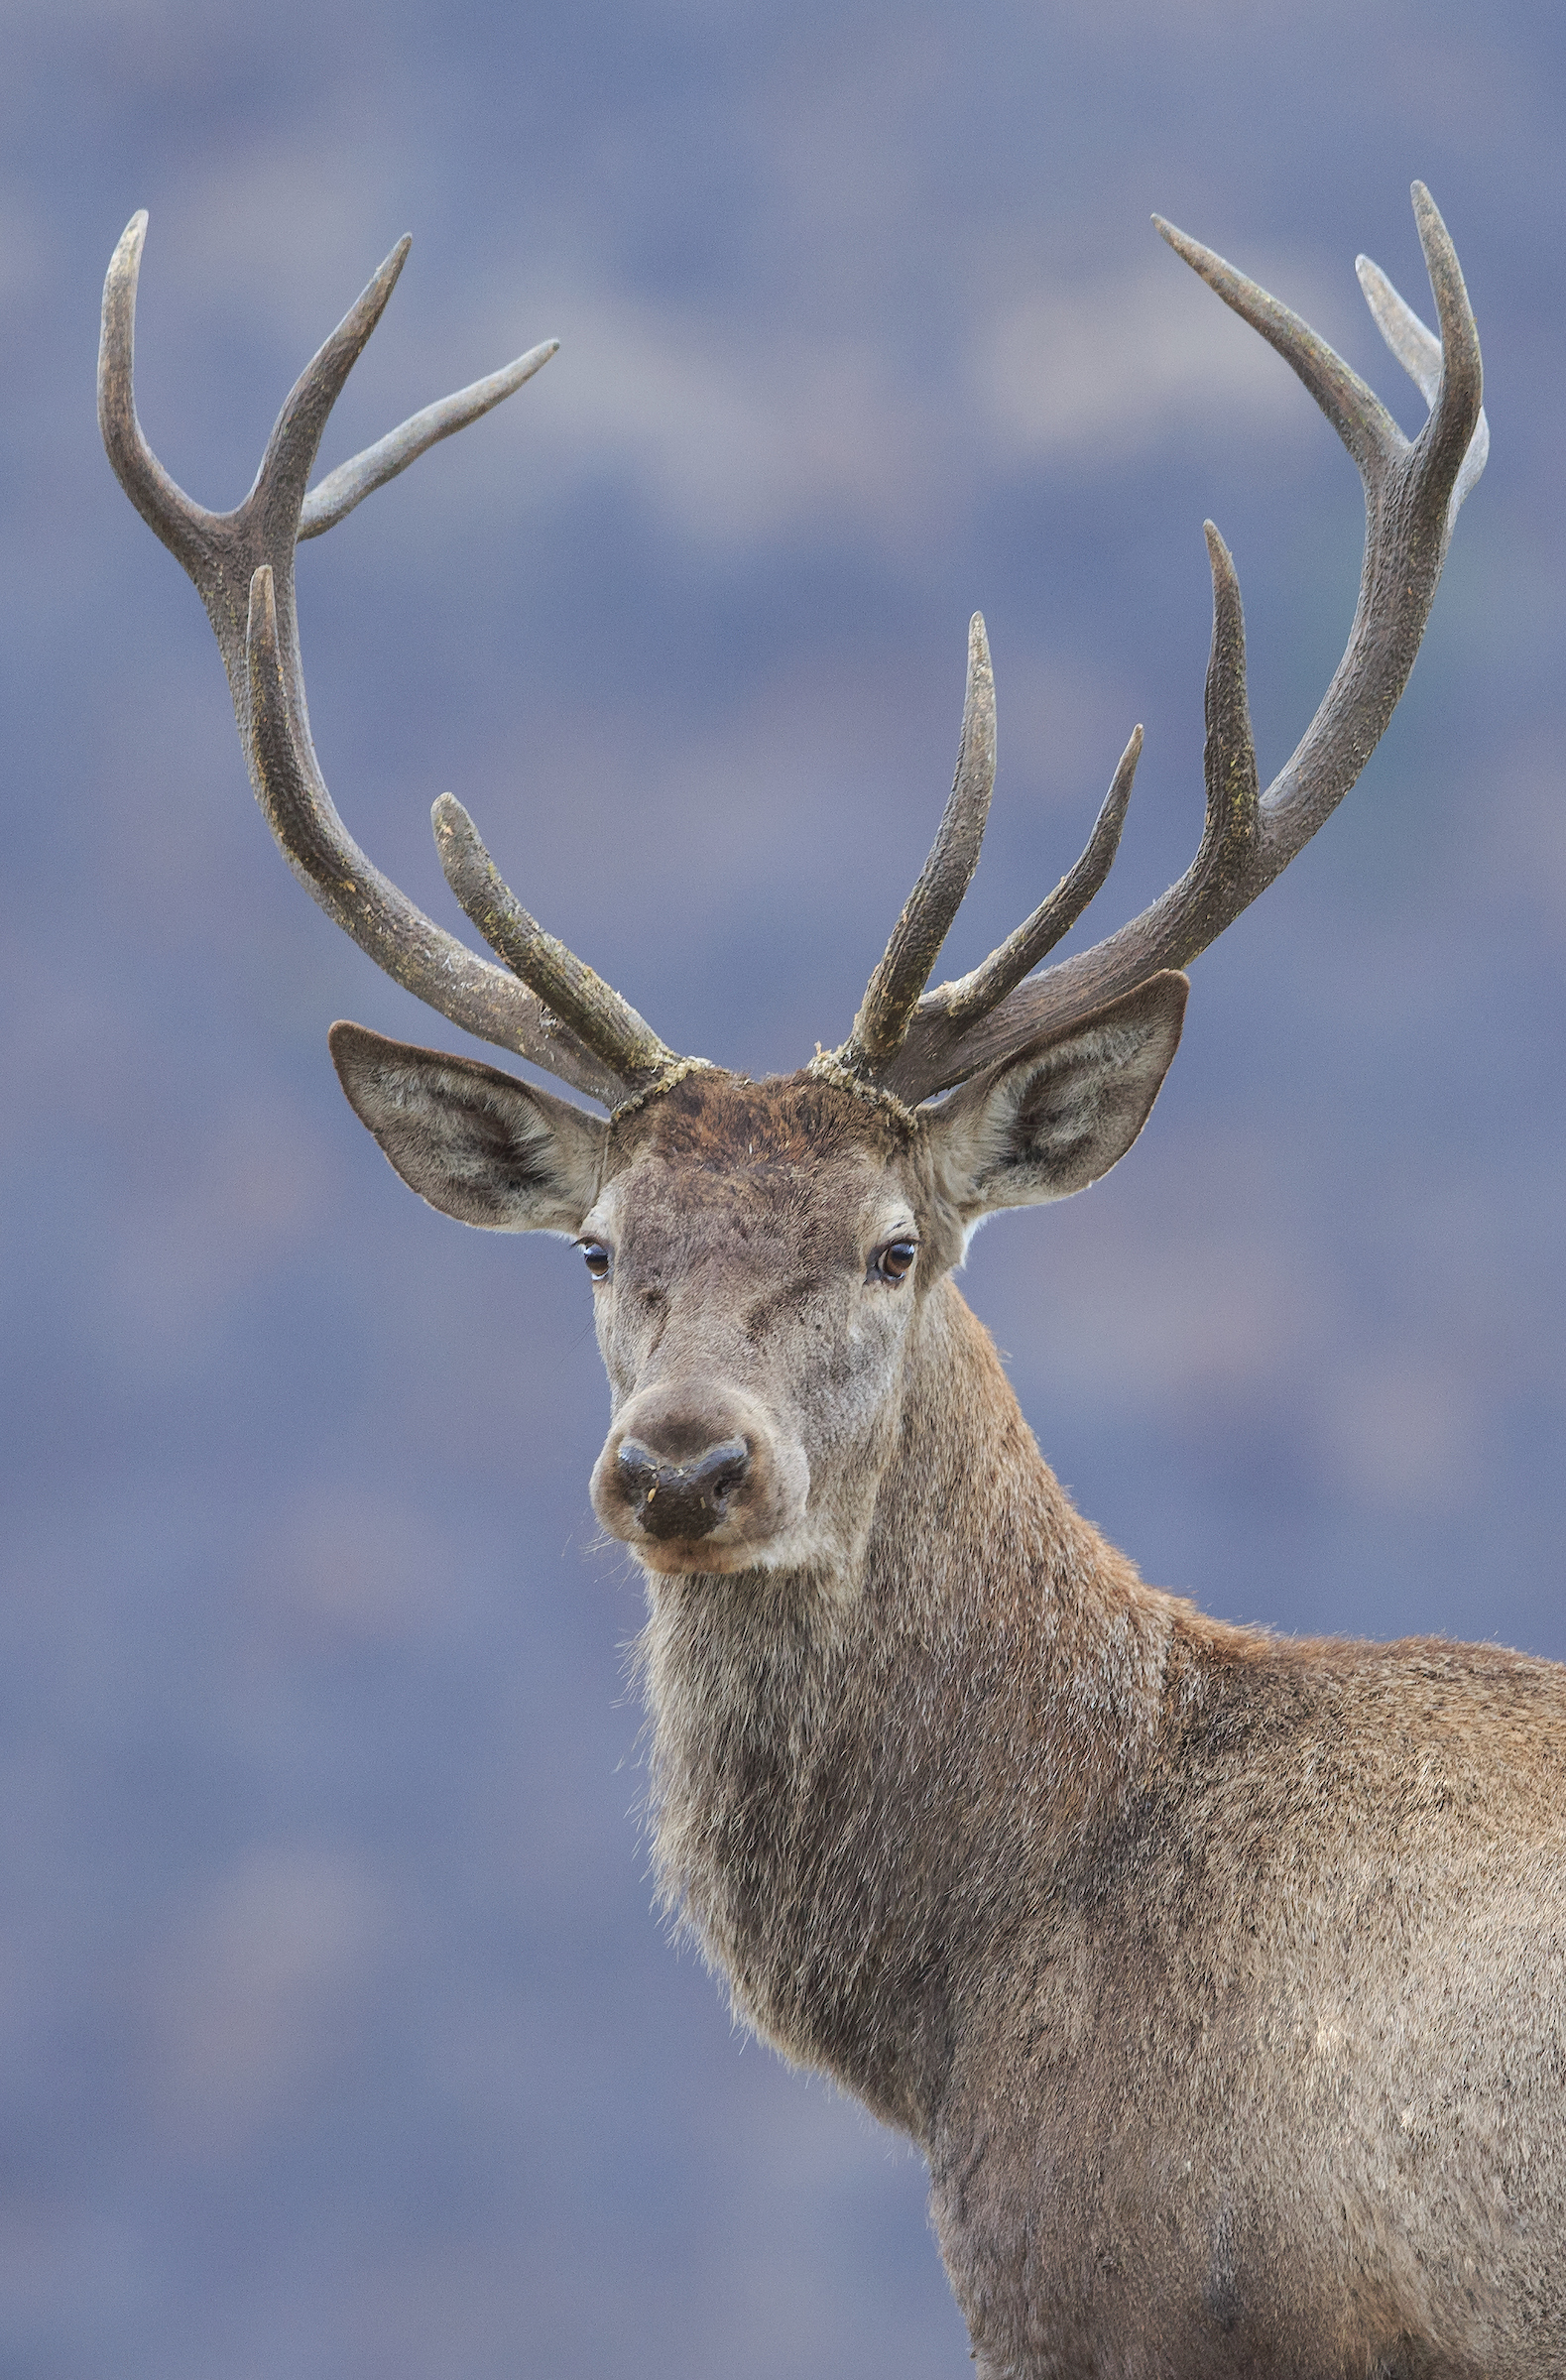 Red deer in the Rhodope Mountains, Bulgaria